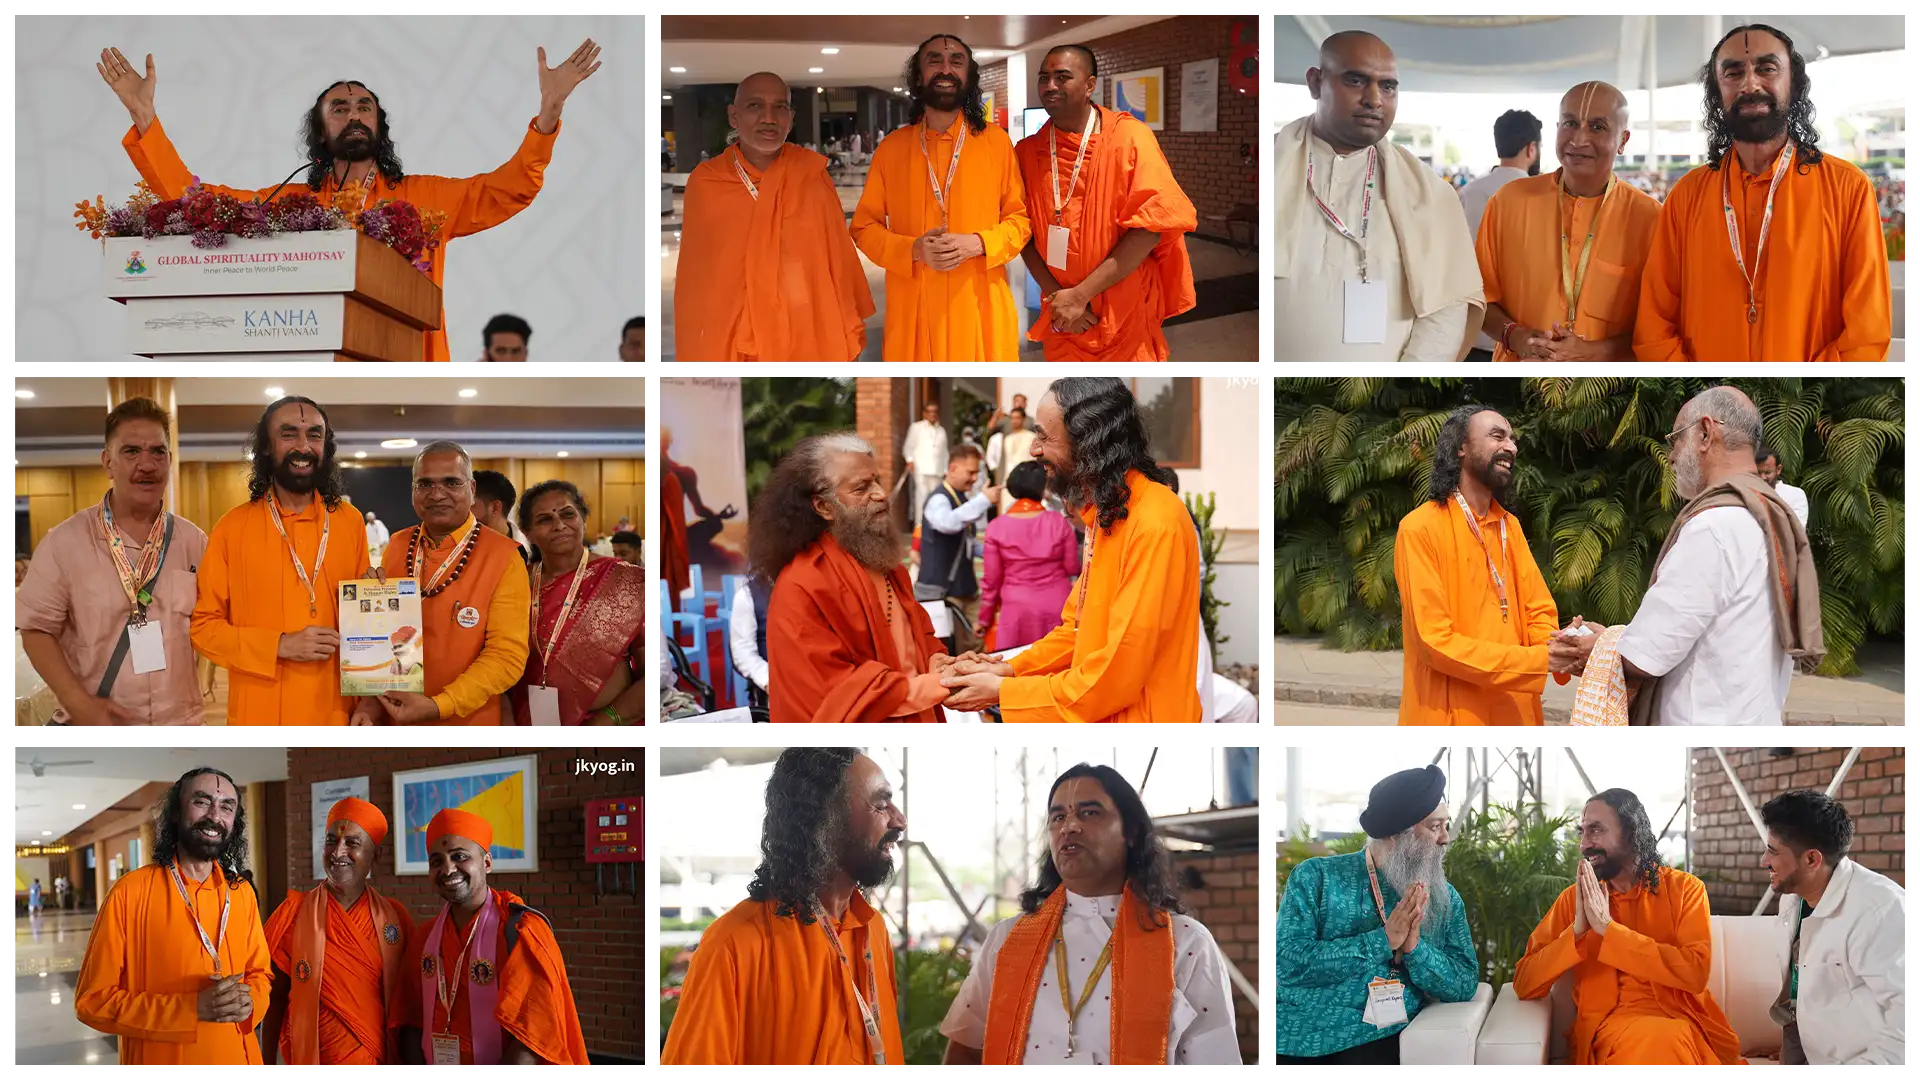 Harmony Through Spirituality: Swami Mukundananda's Enlightening Address at the Global Spirituality Mahotsav